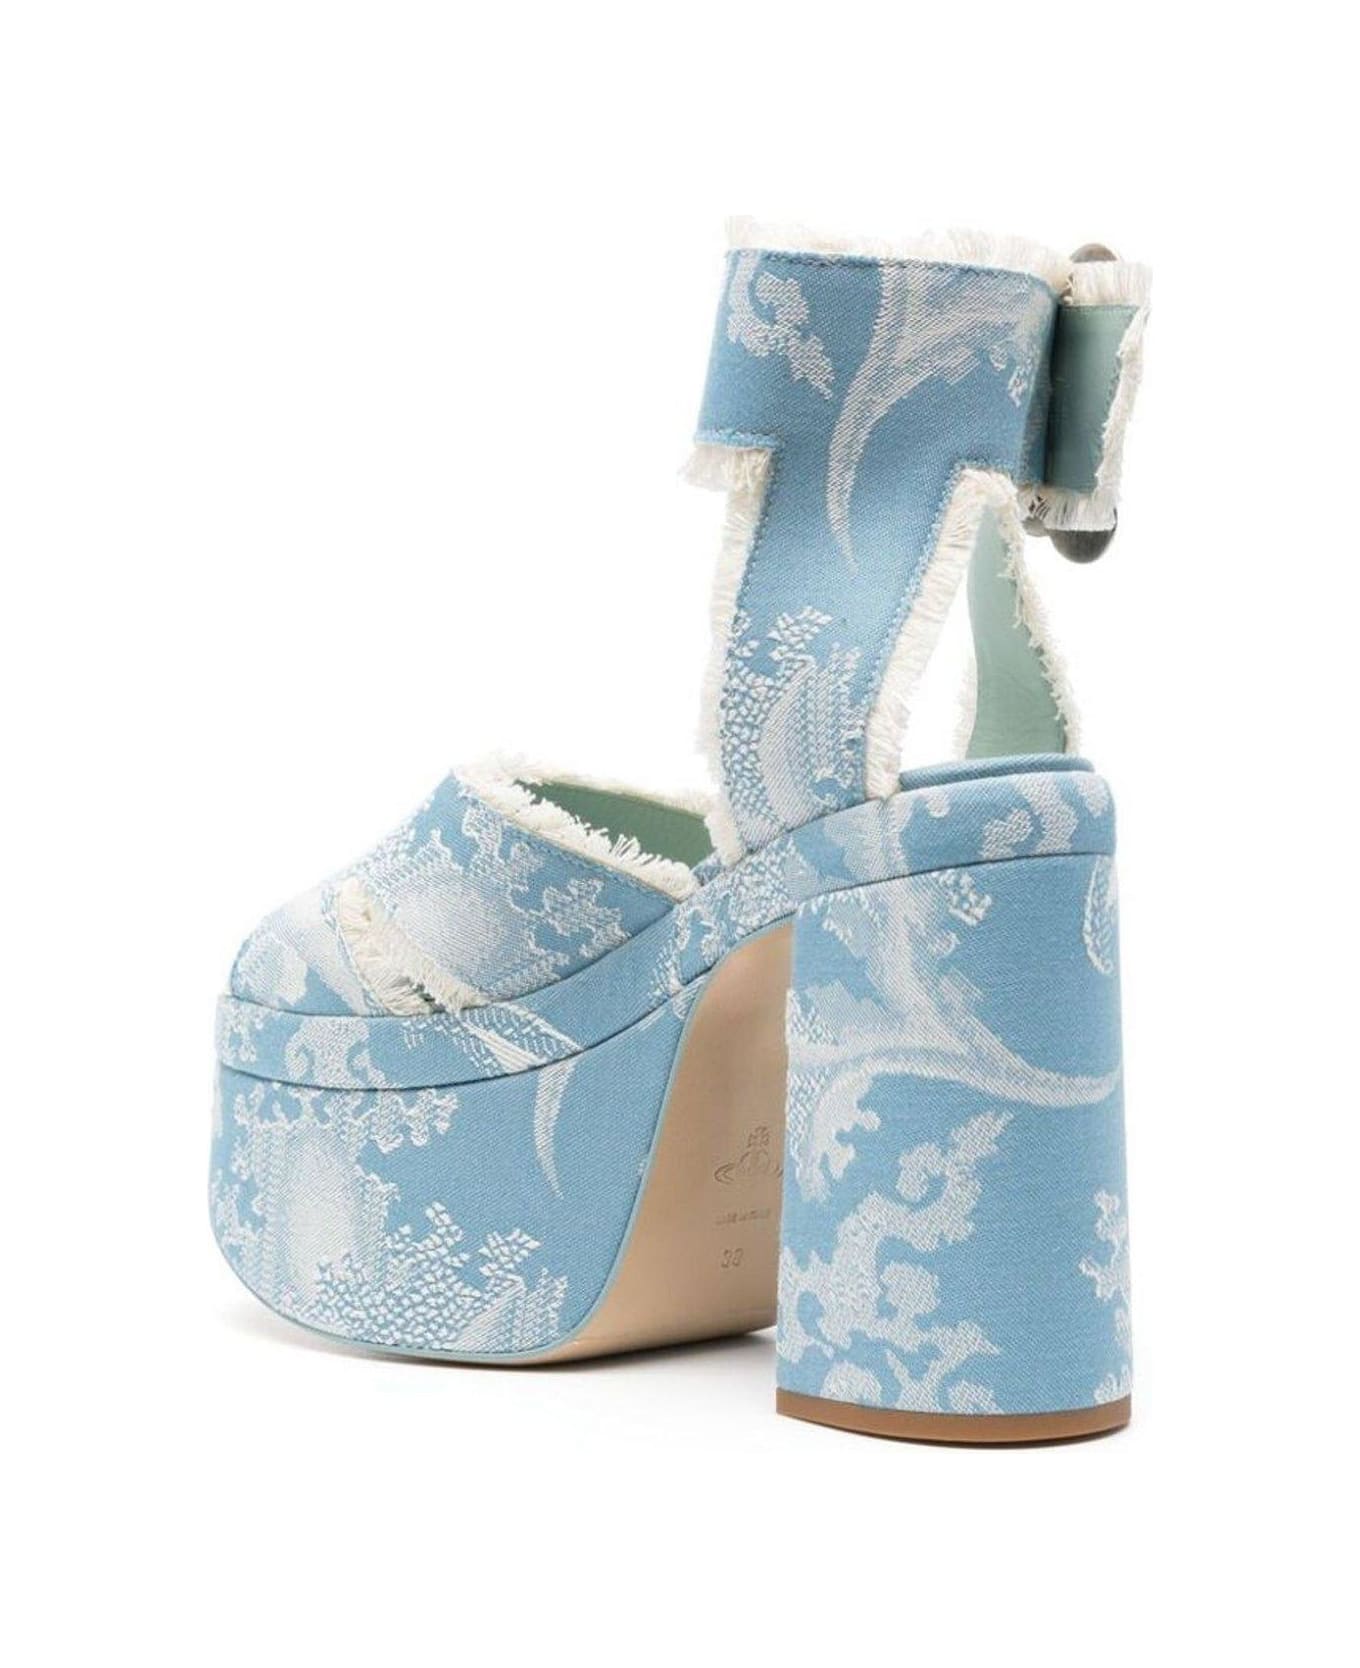 Vivienne Westwood Ankle Buckled Platform Sandals - BLUE サンダル